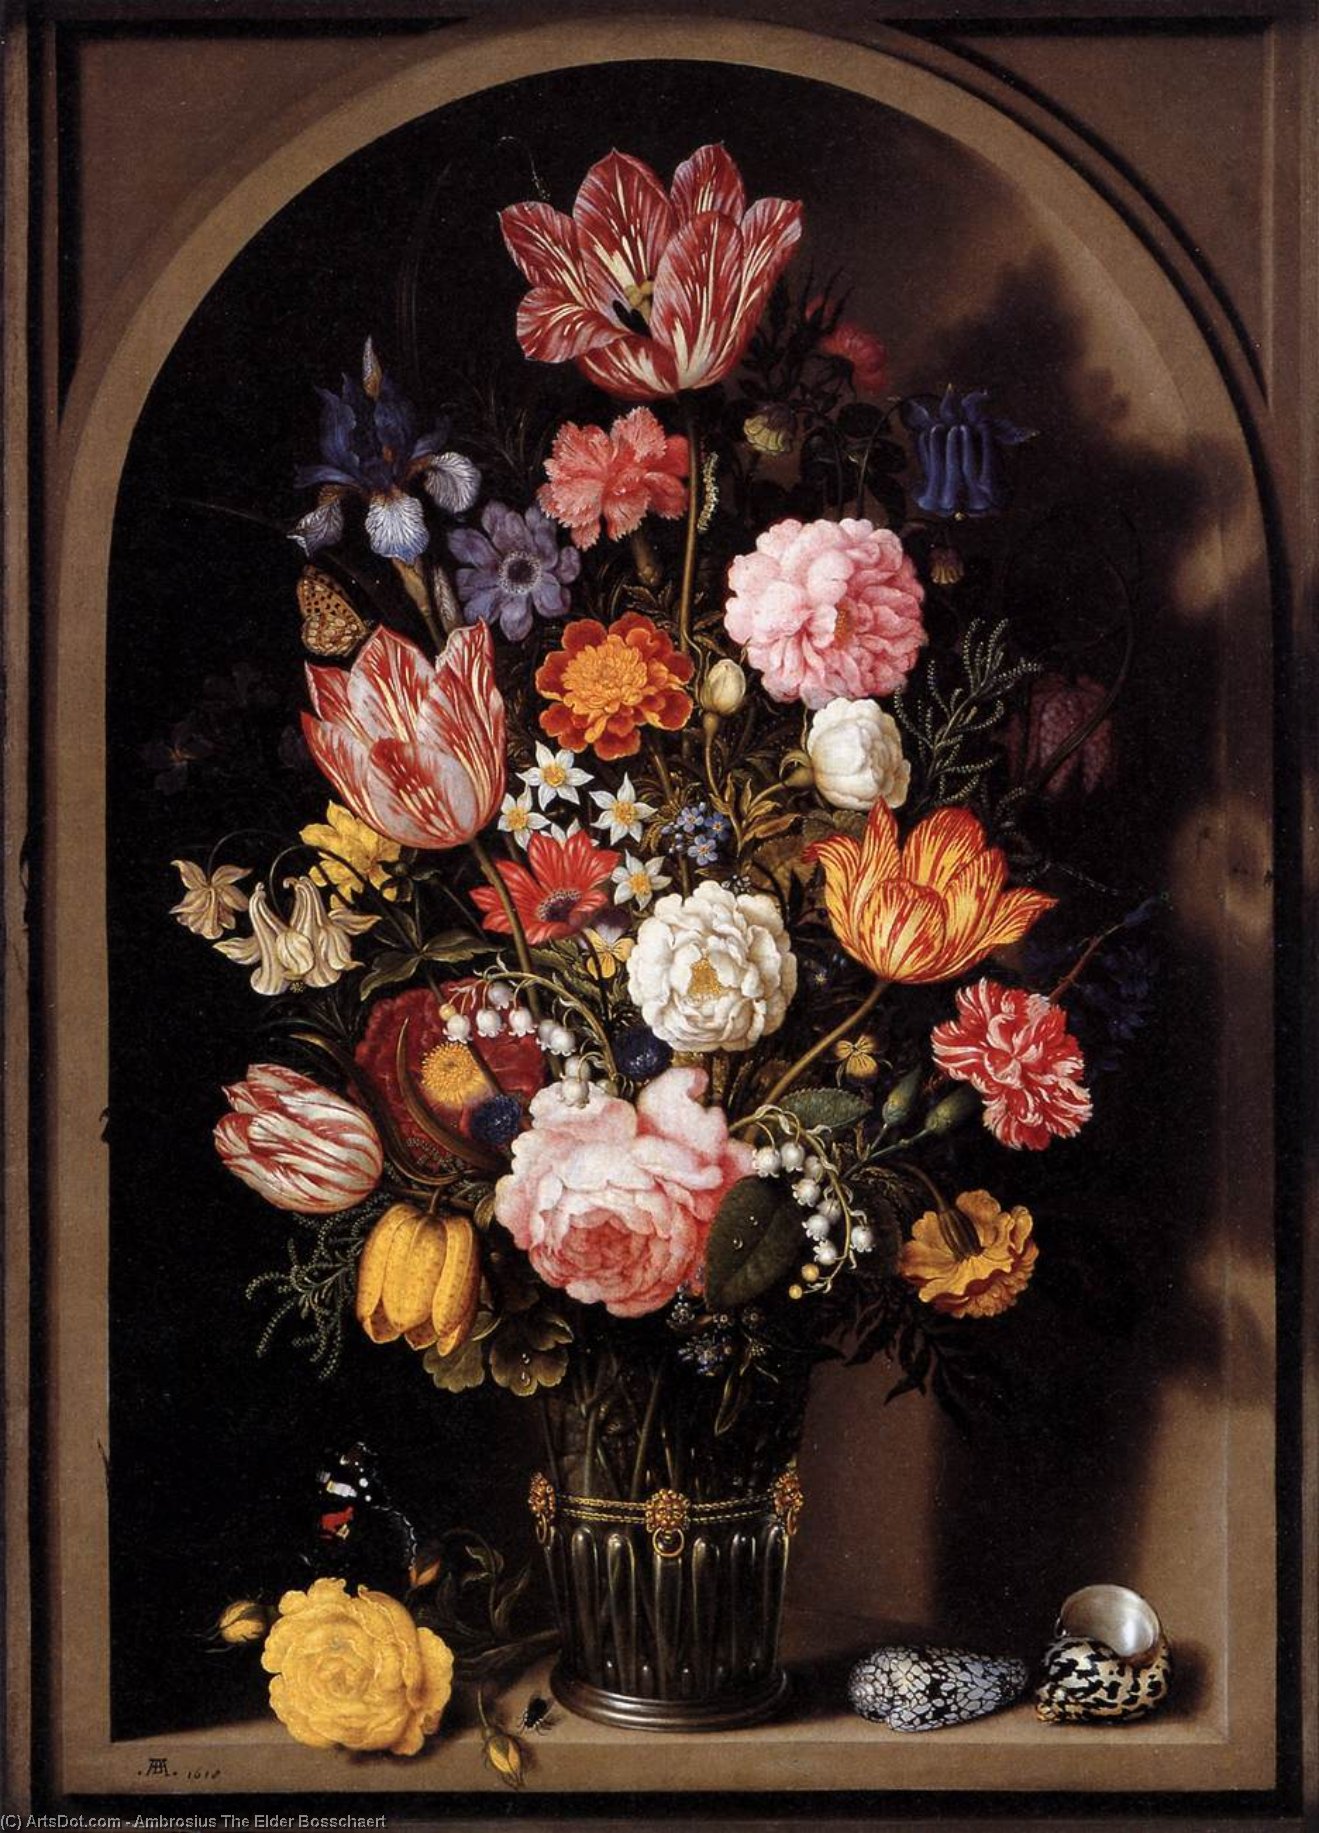 Comprar Reproducciones De Arte Del Museo Bouquet of Flowers in a Vase, 1618 de Ambrosius Bosschaert The Elder | ArtsDot.com